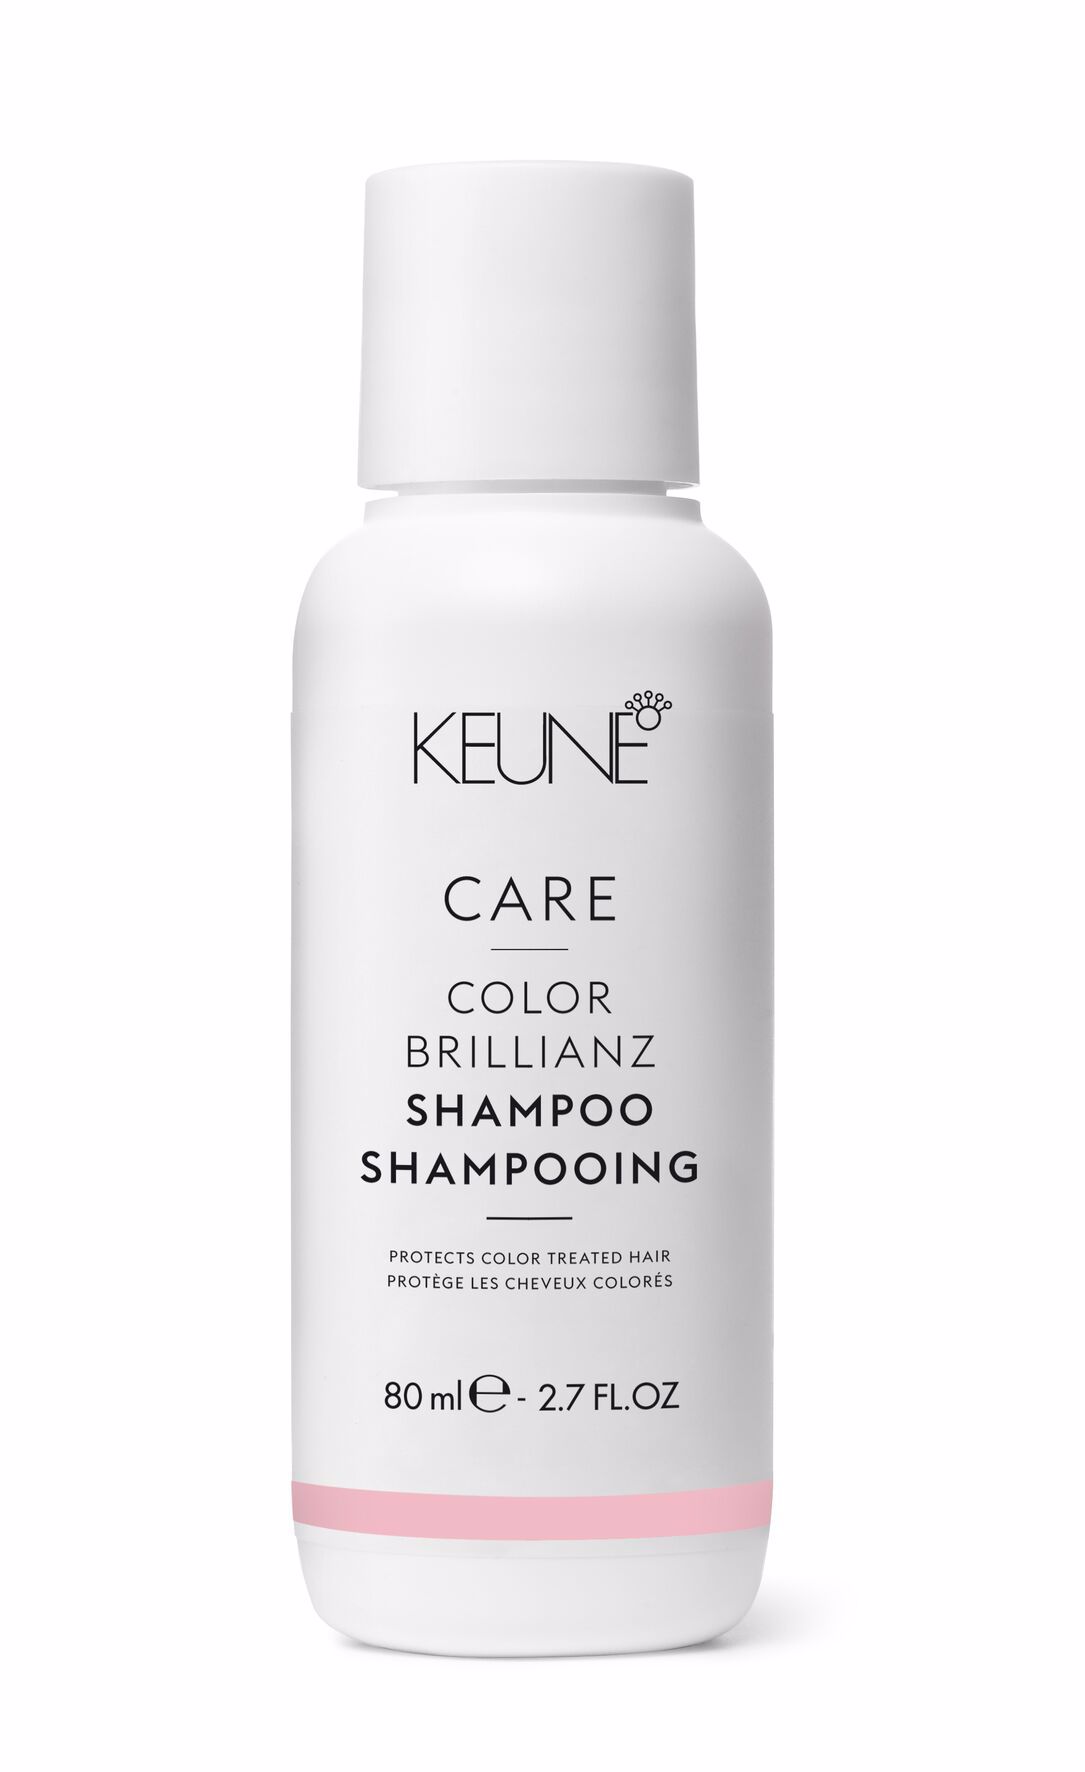 Le Color Brilianz Shampoo, conçu pour les cheveux colorés, offre une brillance des couleurs longue durée. Découvrez d'autres produits pour les cheveux colorés sur keune.ch.